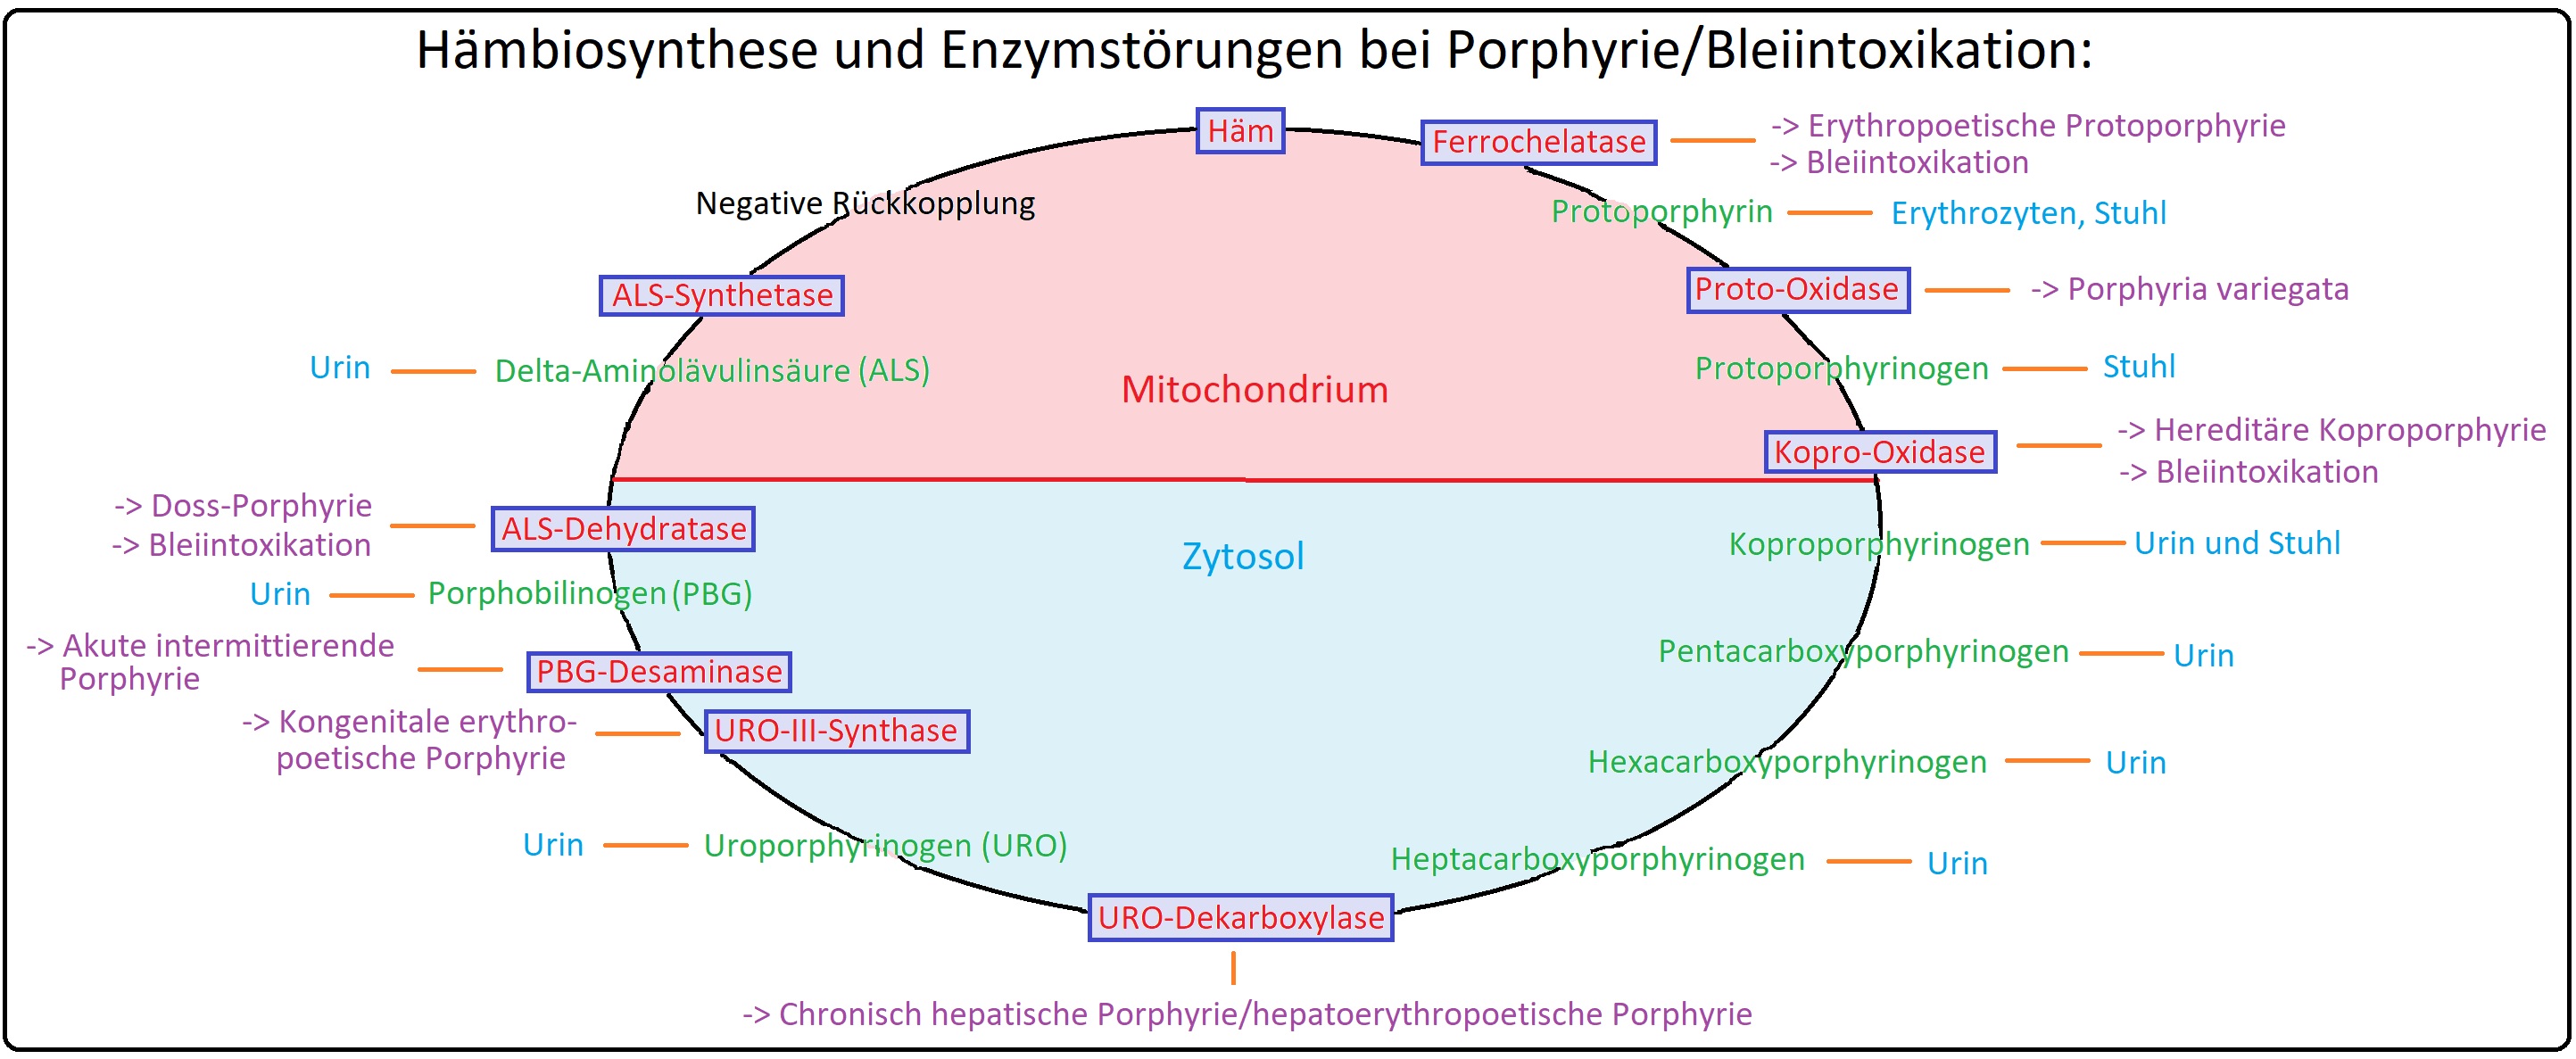 511 Haembiosynthese und Enzymstörungen bei Porphyrie